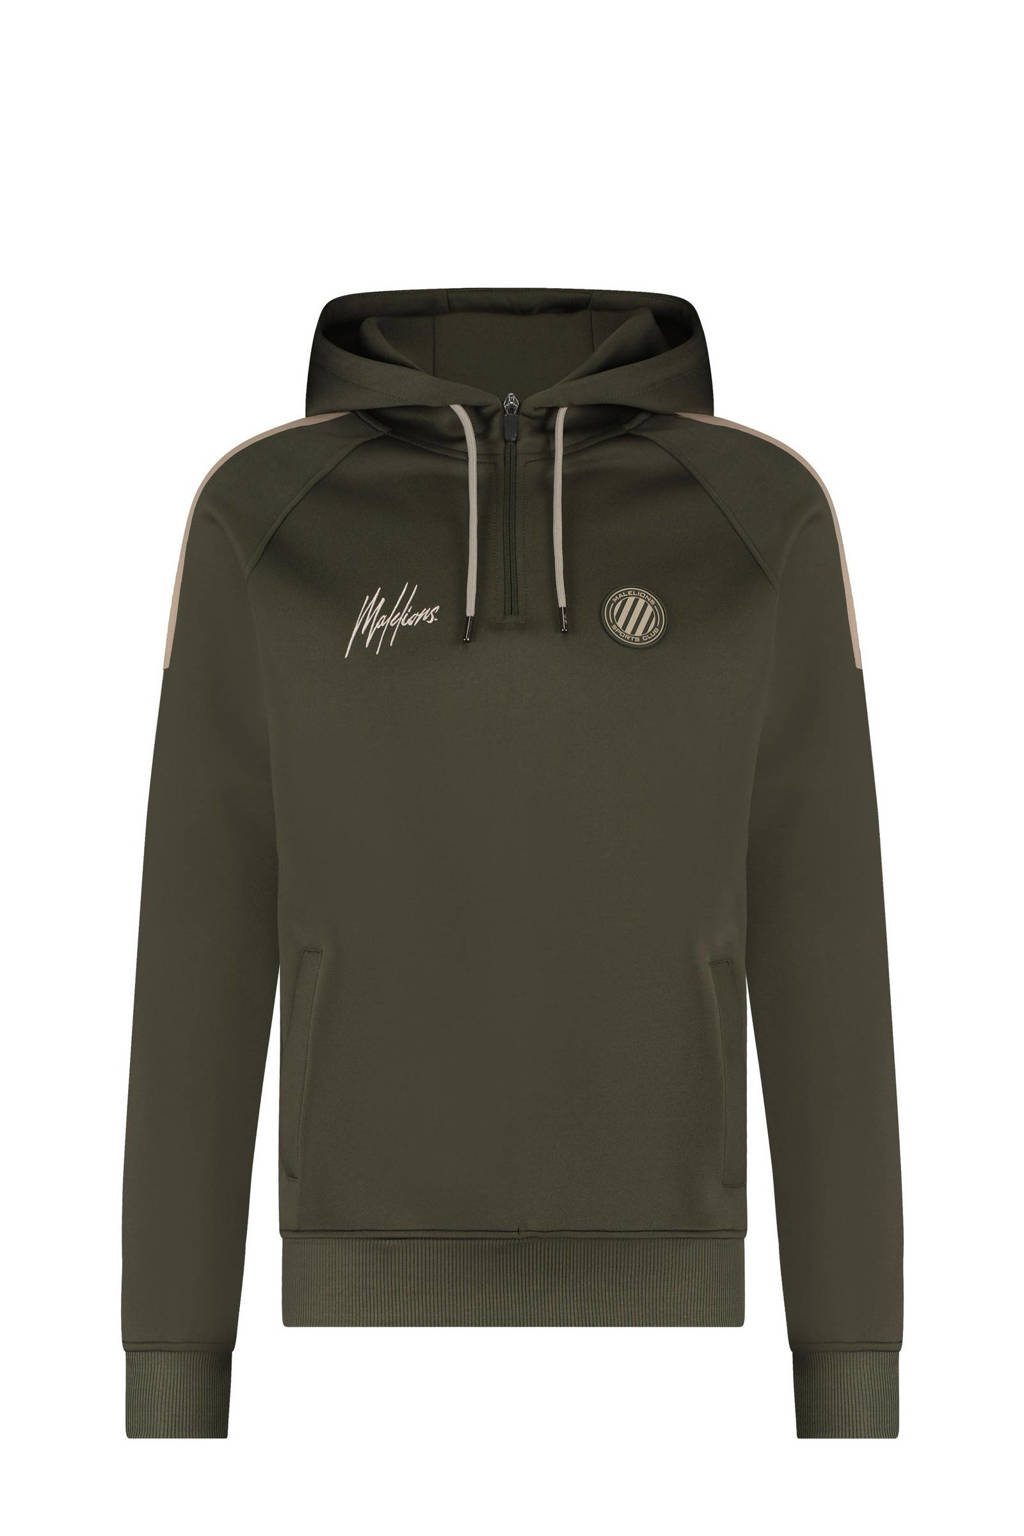 Malelions hoodie Hoodie Striker met logo groen/ecru, Groen/ecru